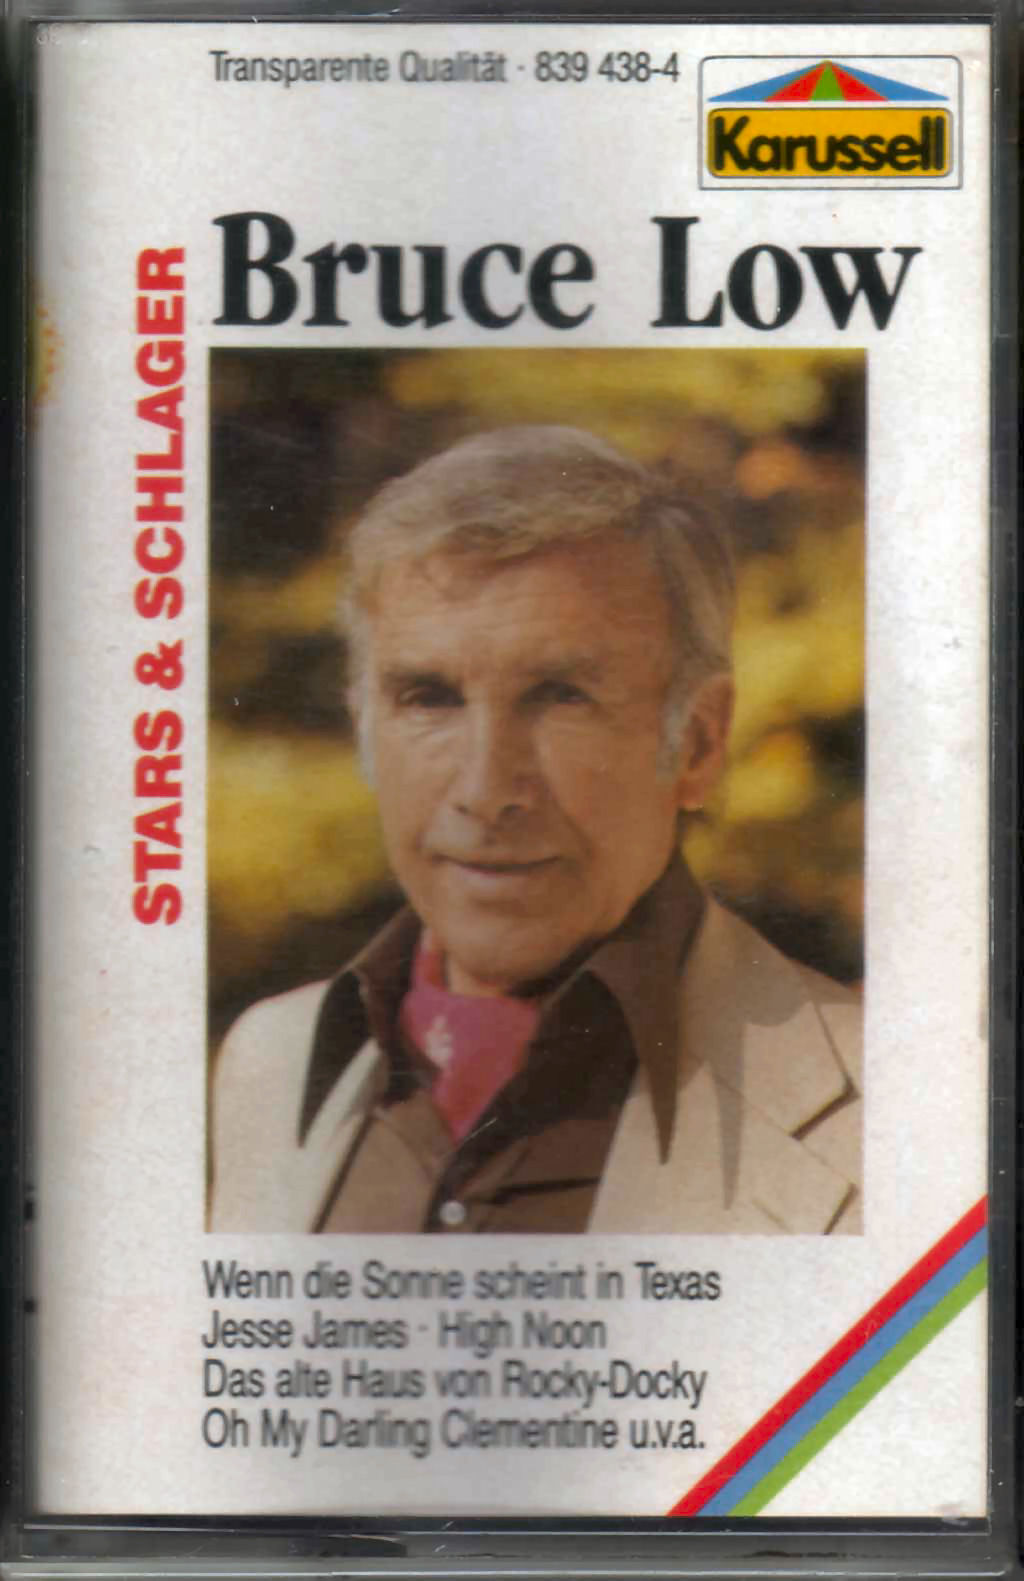 Musikkassette von Bruce Low